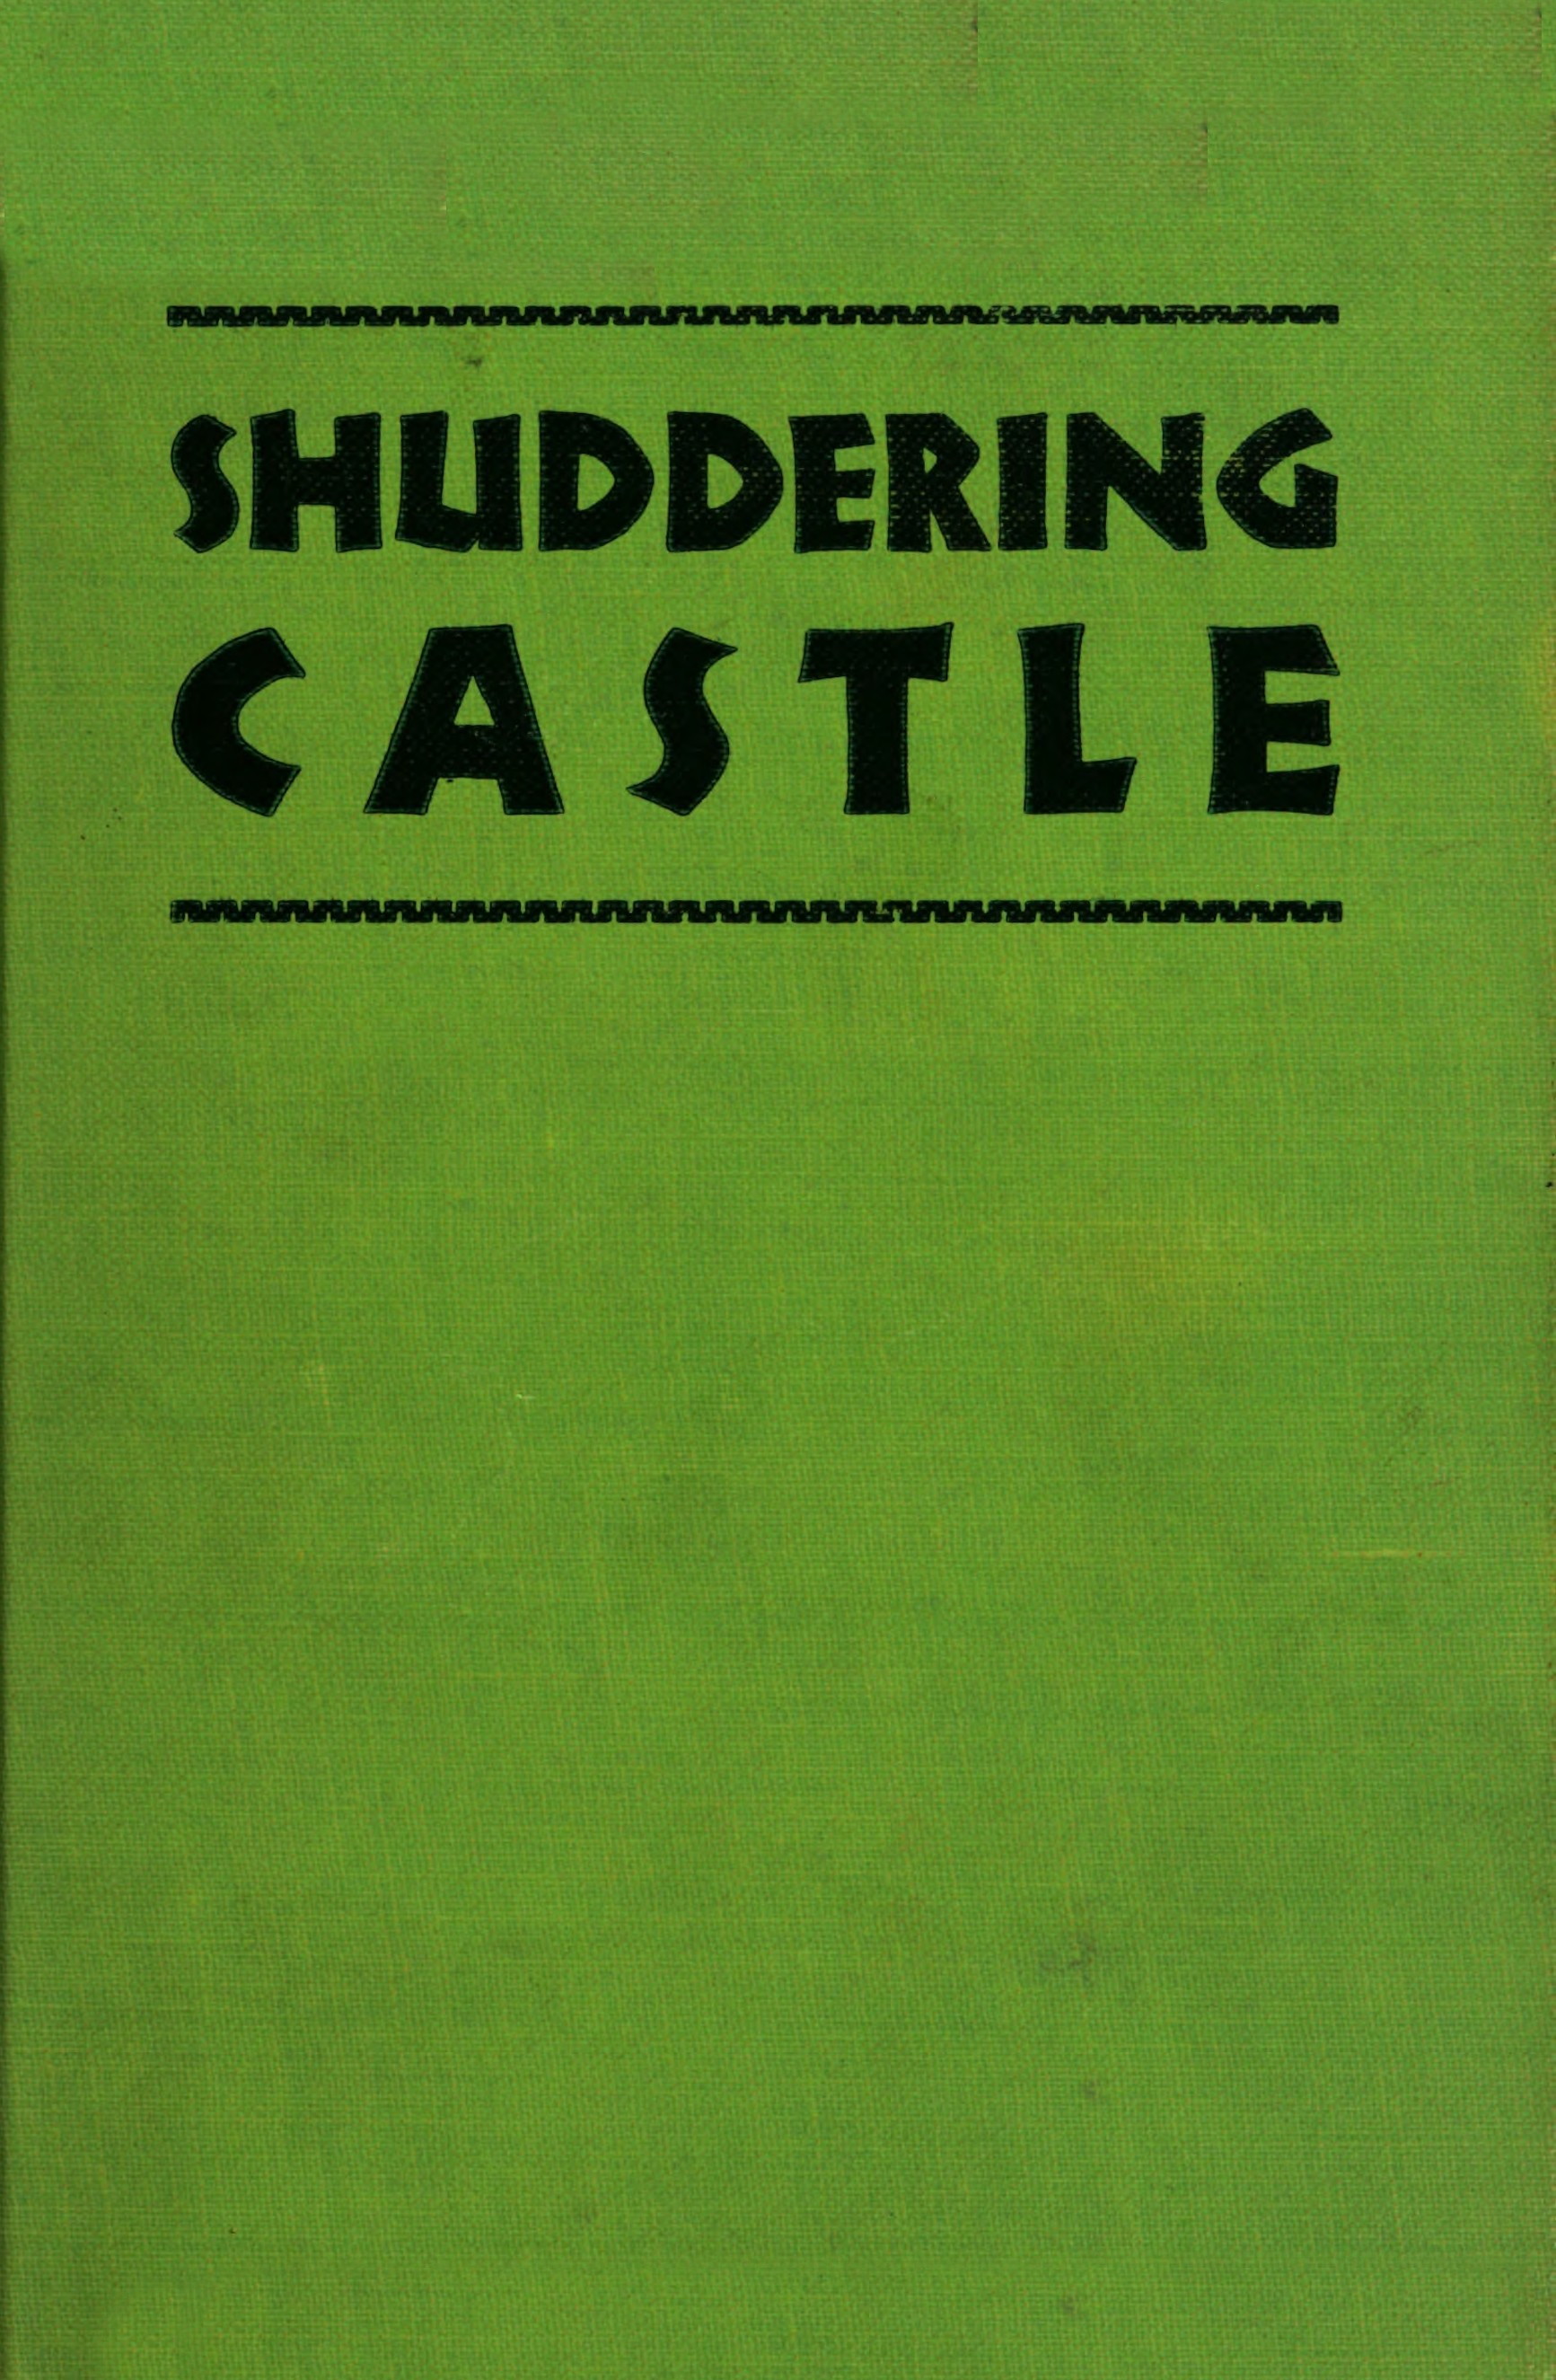 Shuddering castle